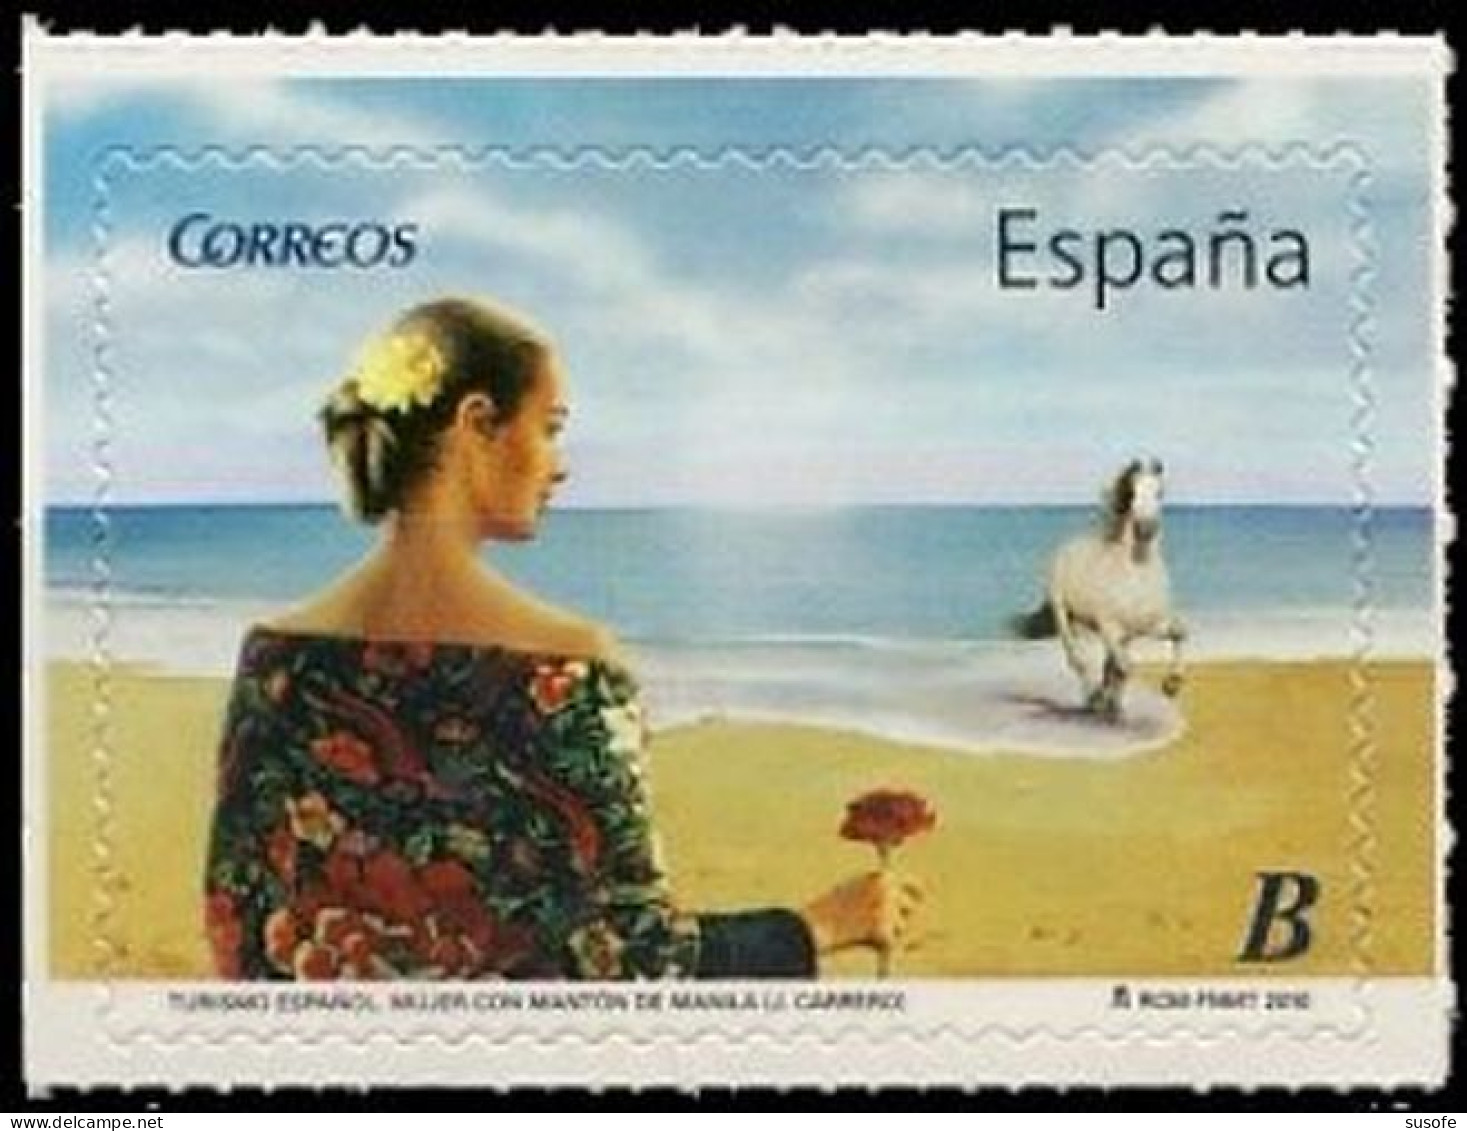 España 2010 Edifil 4532 Sello ** Turismo Mujer Con Mantón De Manila  (J. Carrero) Spain Stamps Timbre Espagne Briefmarke - Unused Stamps